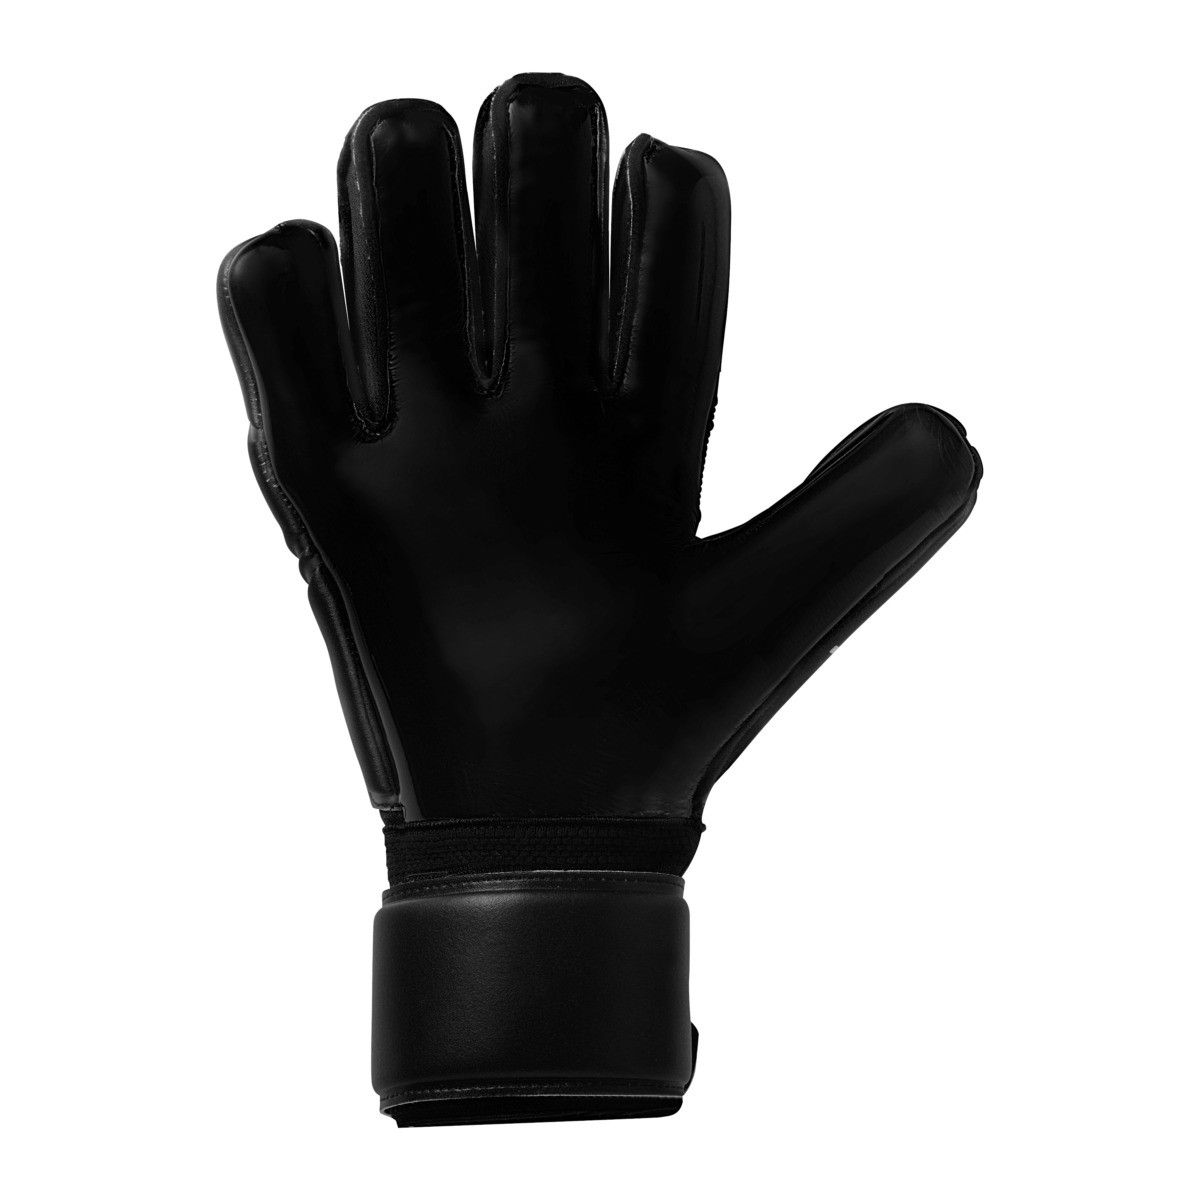 Вратарские перчатки Uhlsport Comfort ABSOLUTGRIP Classic Cut купить